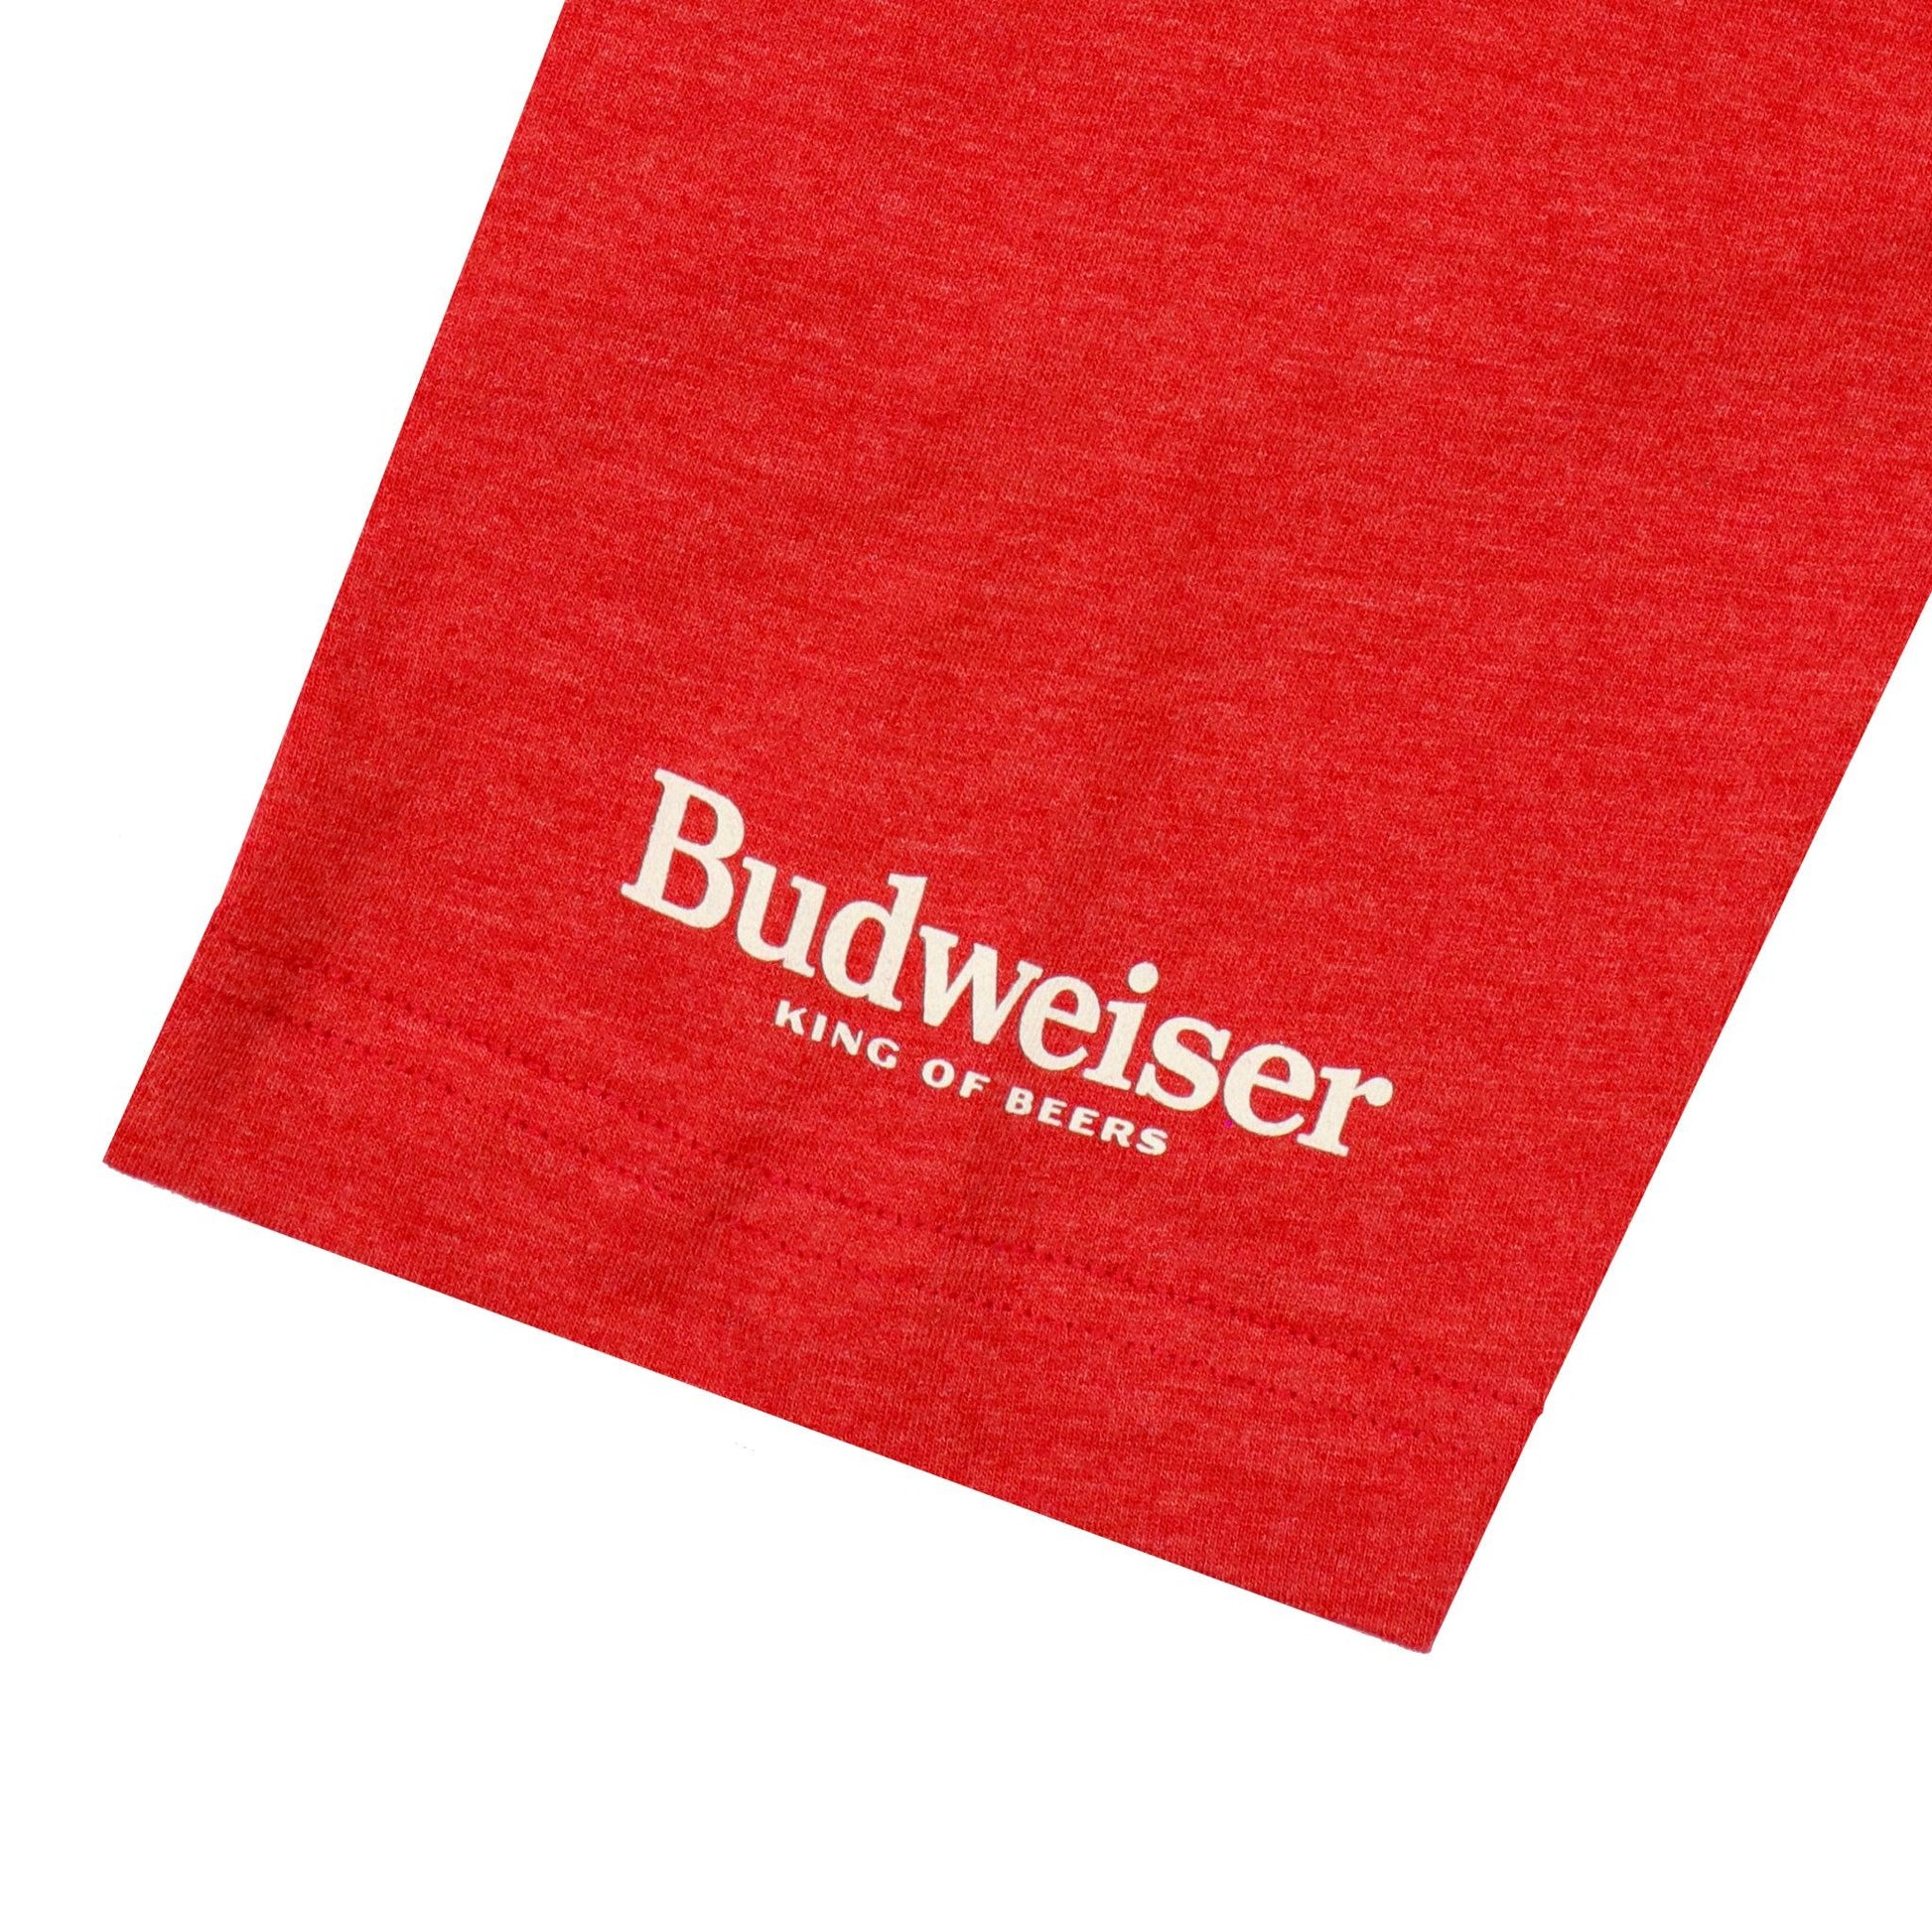 detail of budweiser on left sleeve 